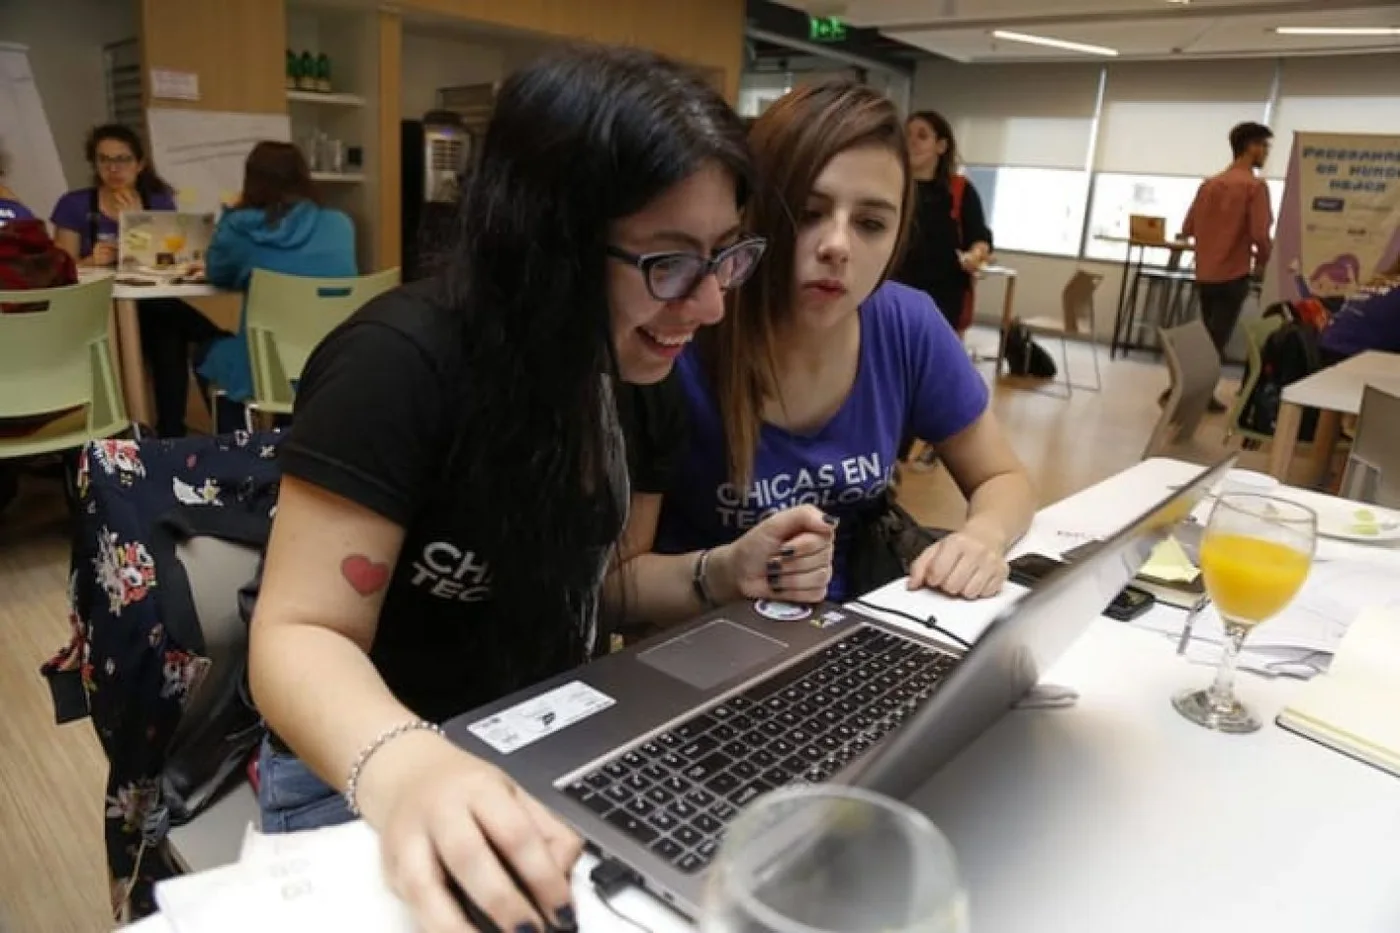 Clubes en tecnología para chicas en espacios para el Desarrollo Laboral y Tecnológico